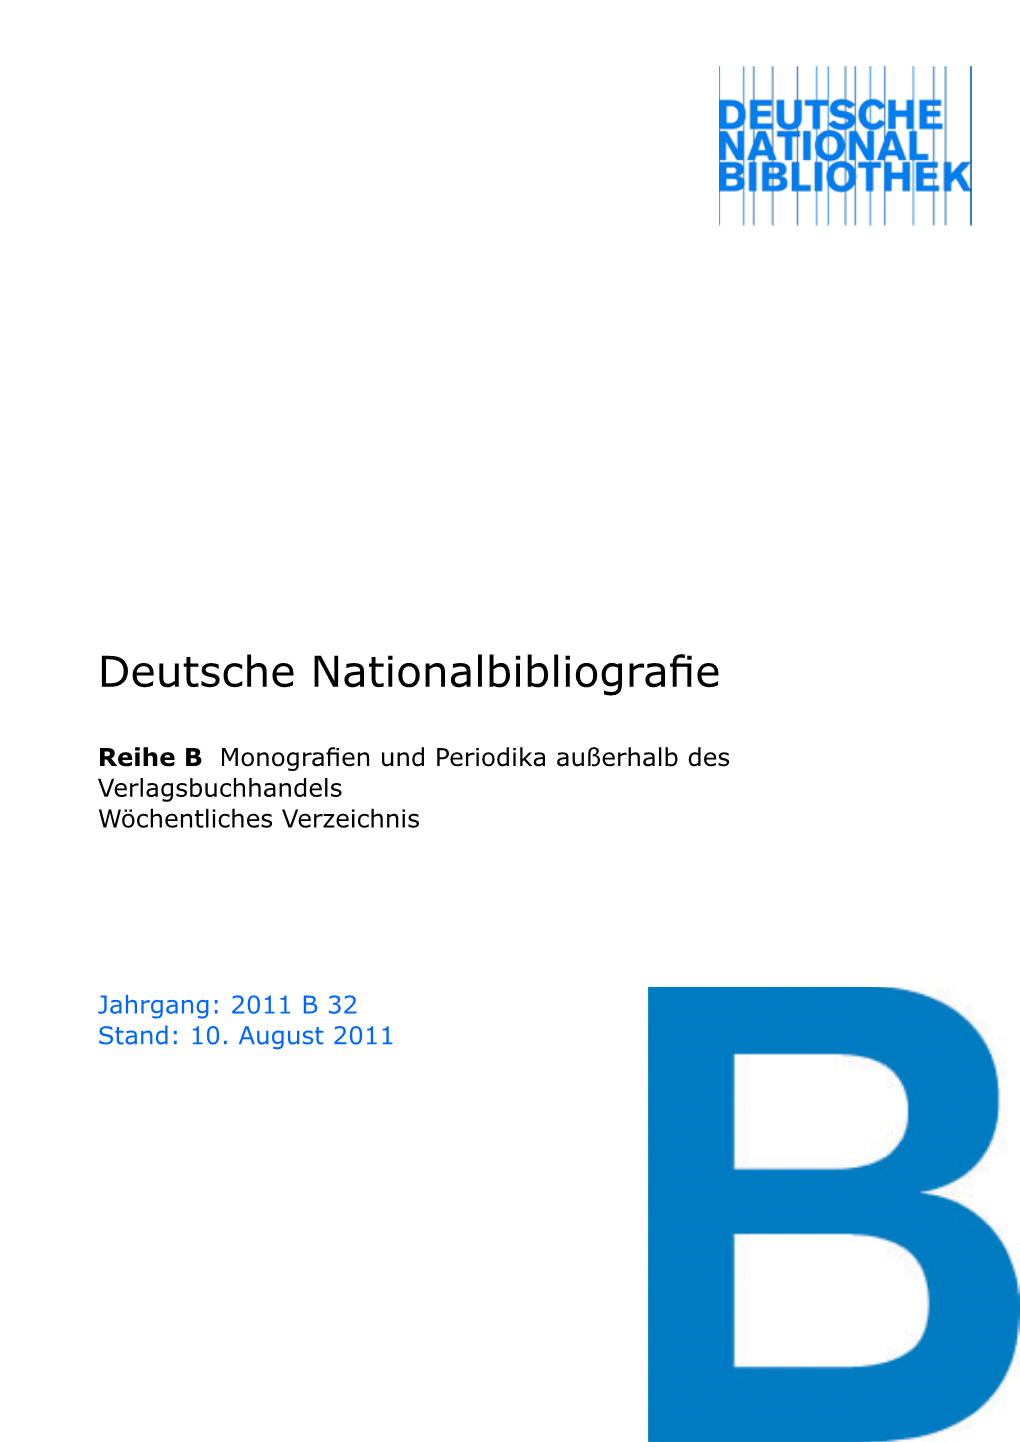 Deutsche Nationalbibliografie 2011 B 32